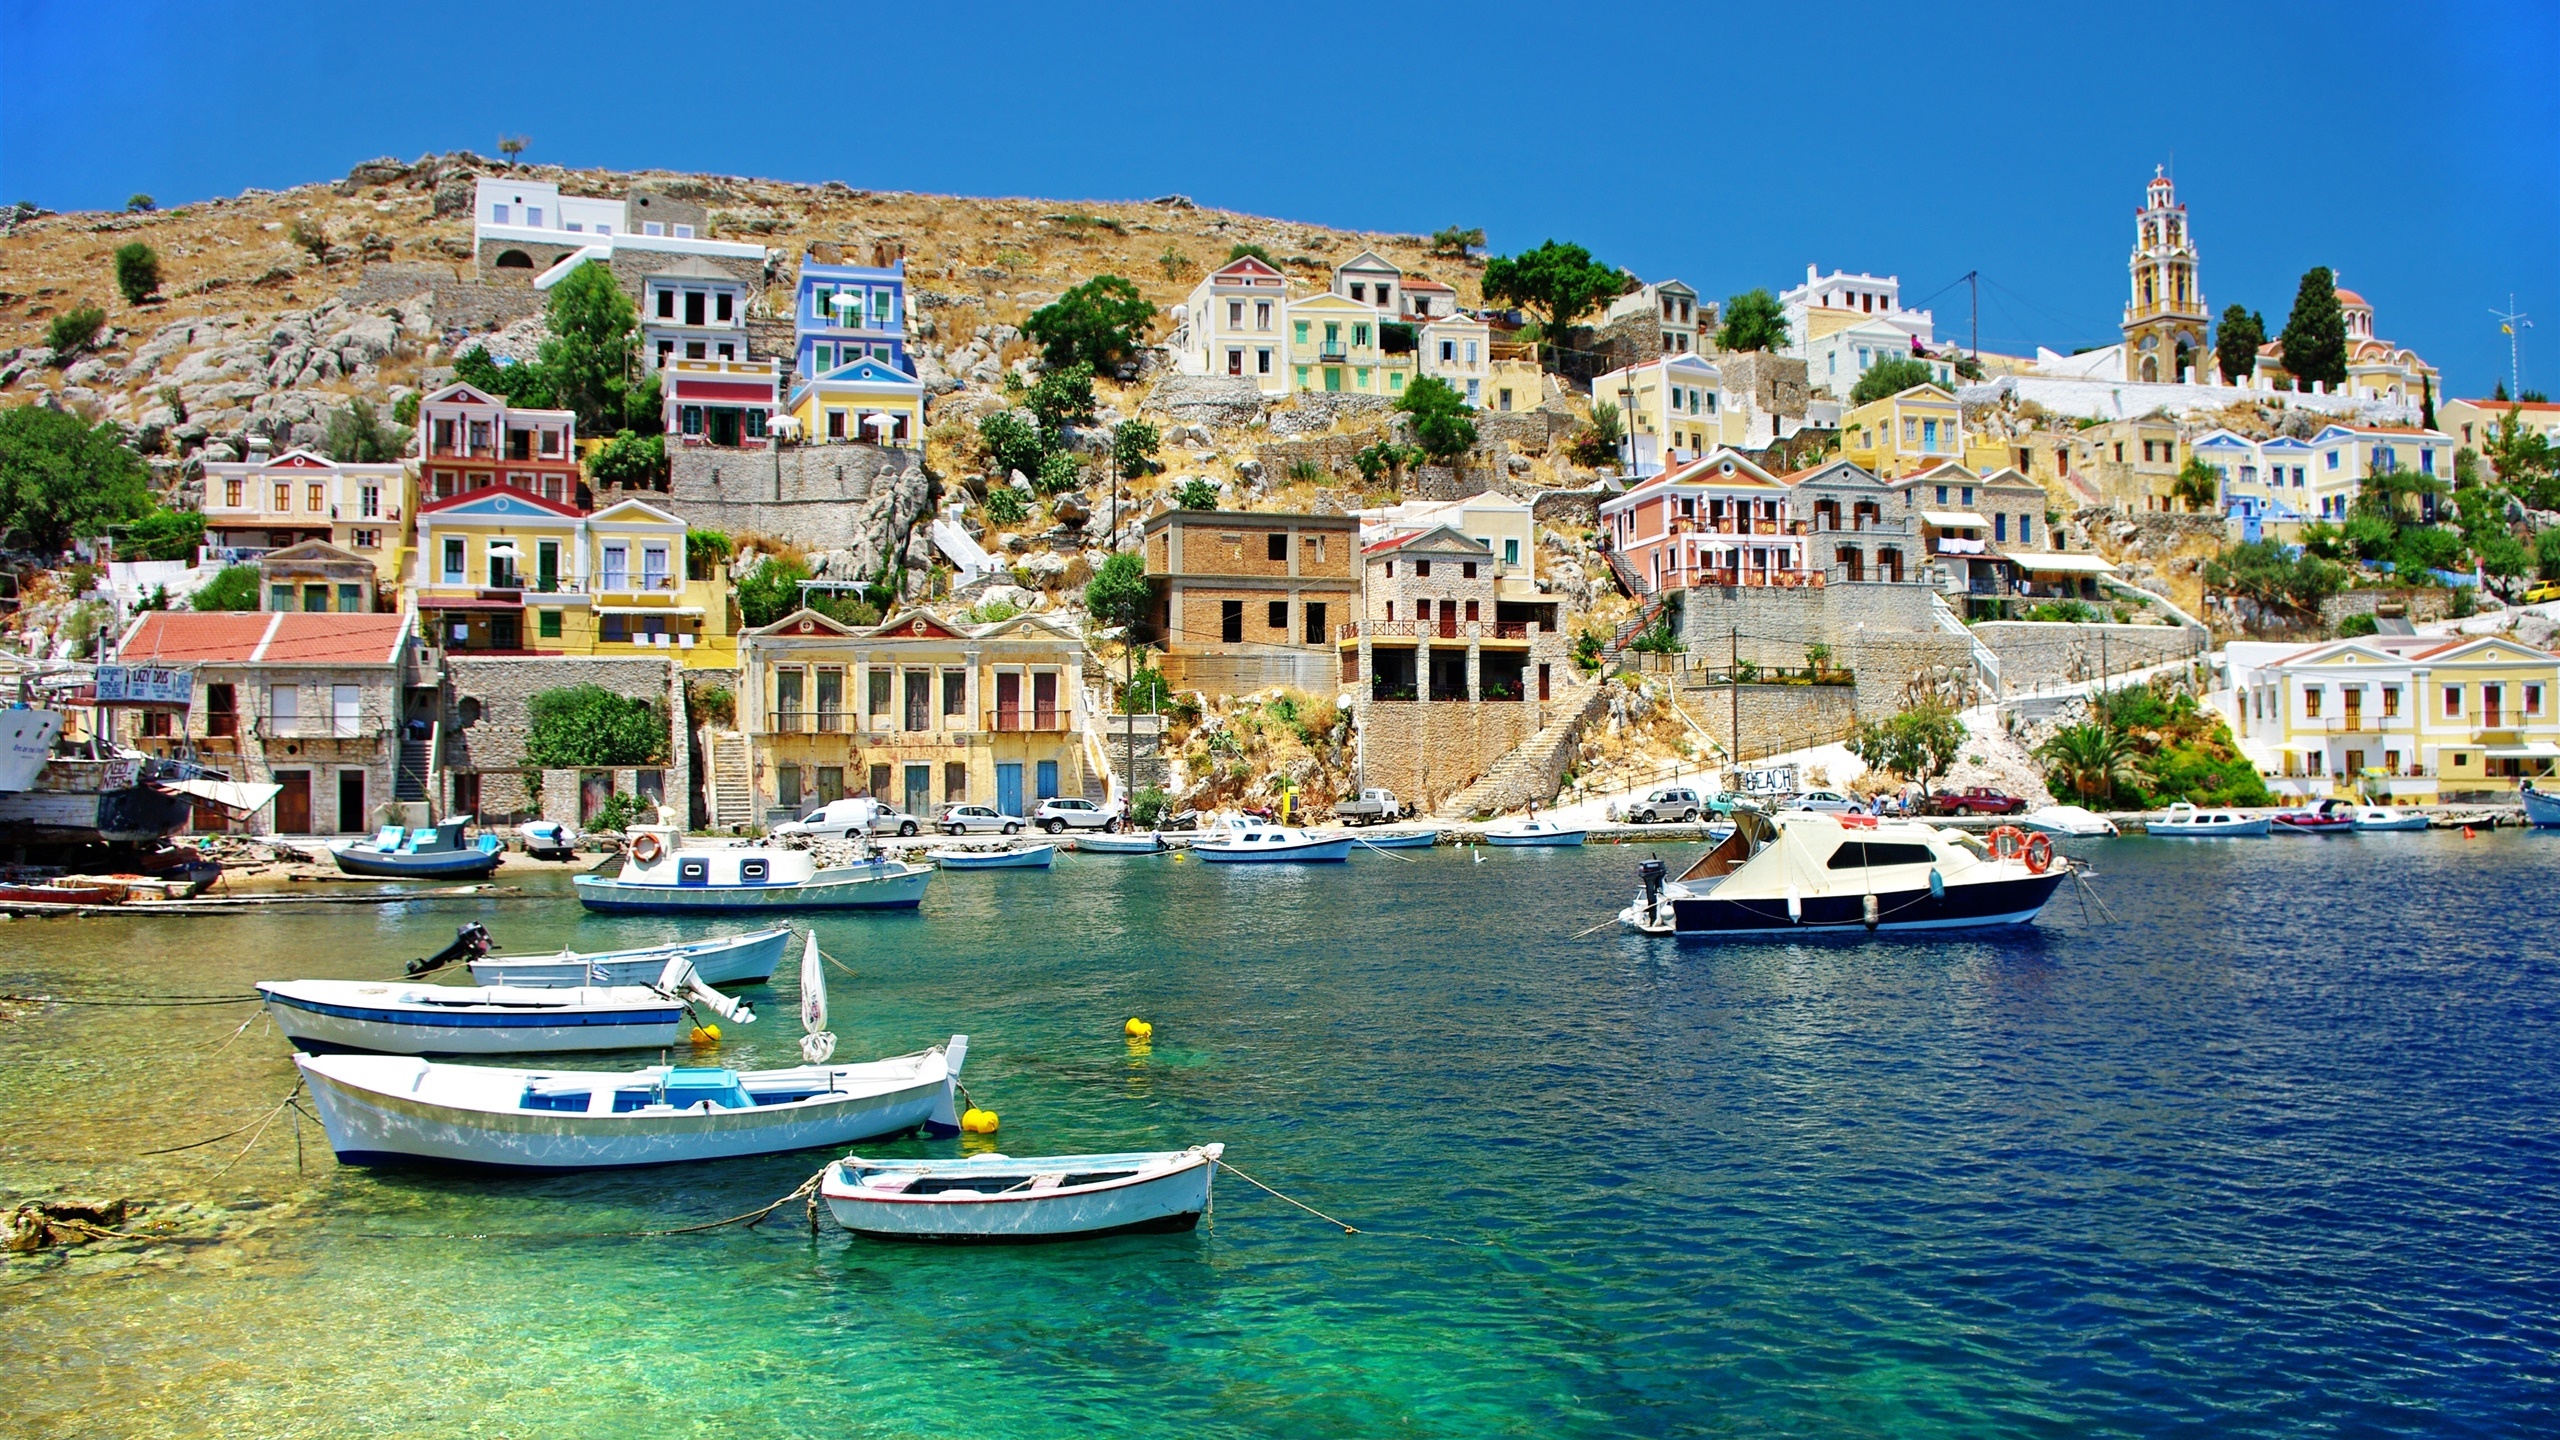 ギリシャ 住宅 海岸 海 船 デスクトップの壁紙 2560x1440 壁紙をダウンロード Ja Hdwall365 Com